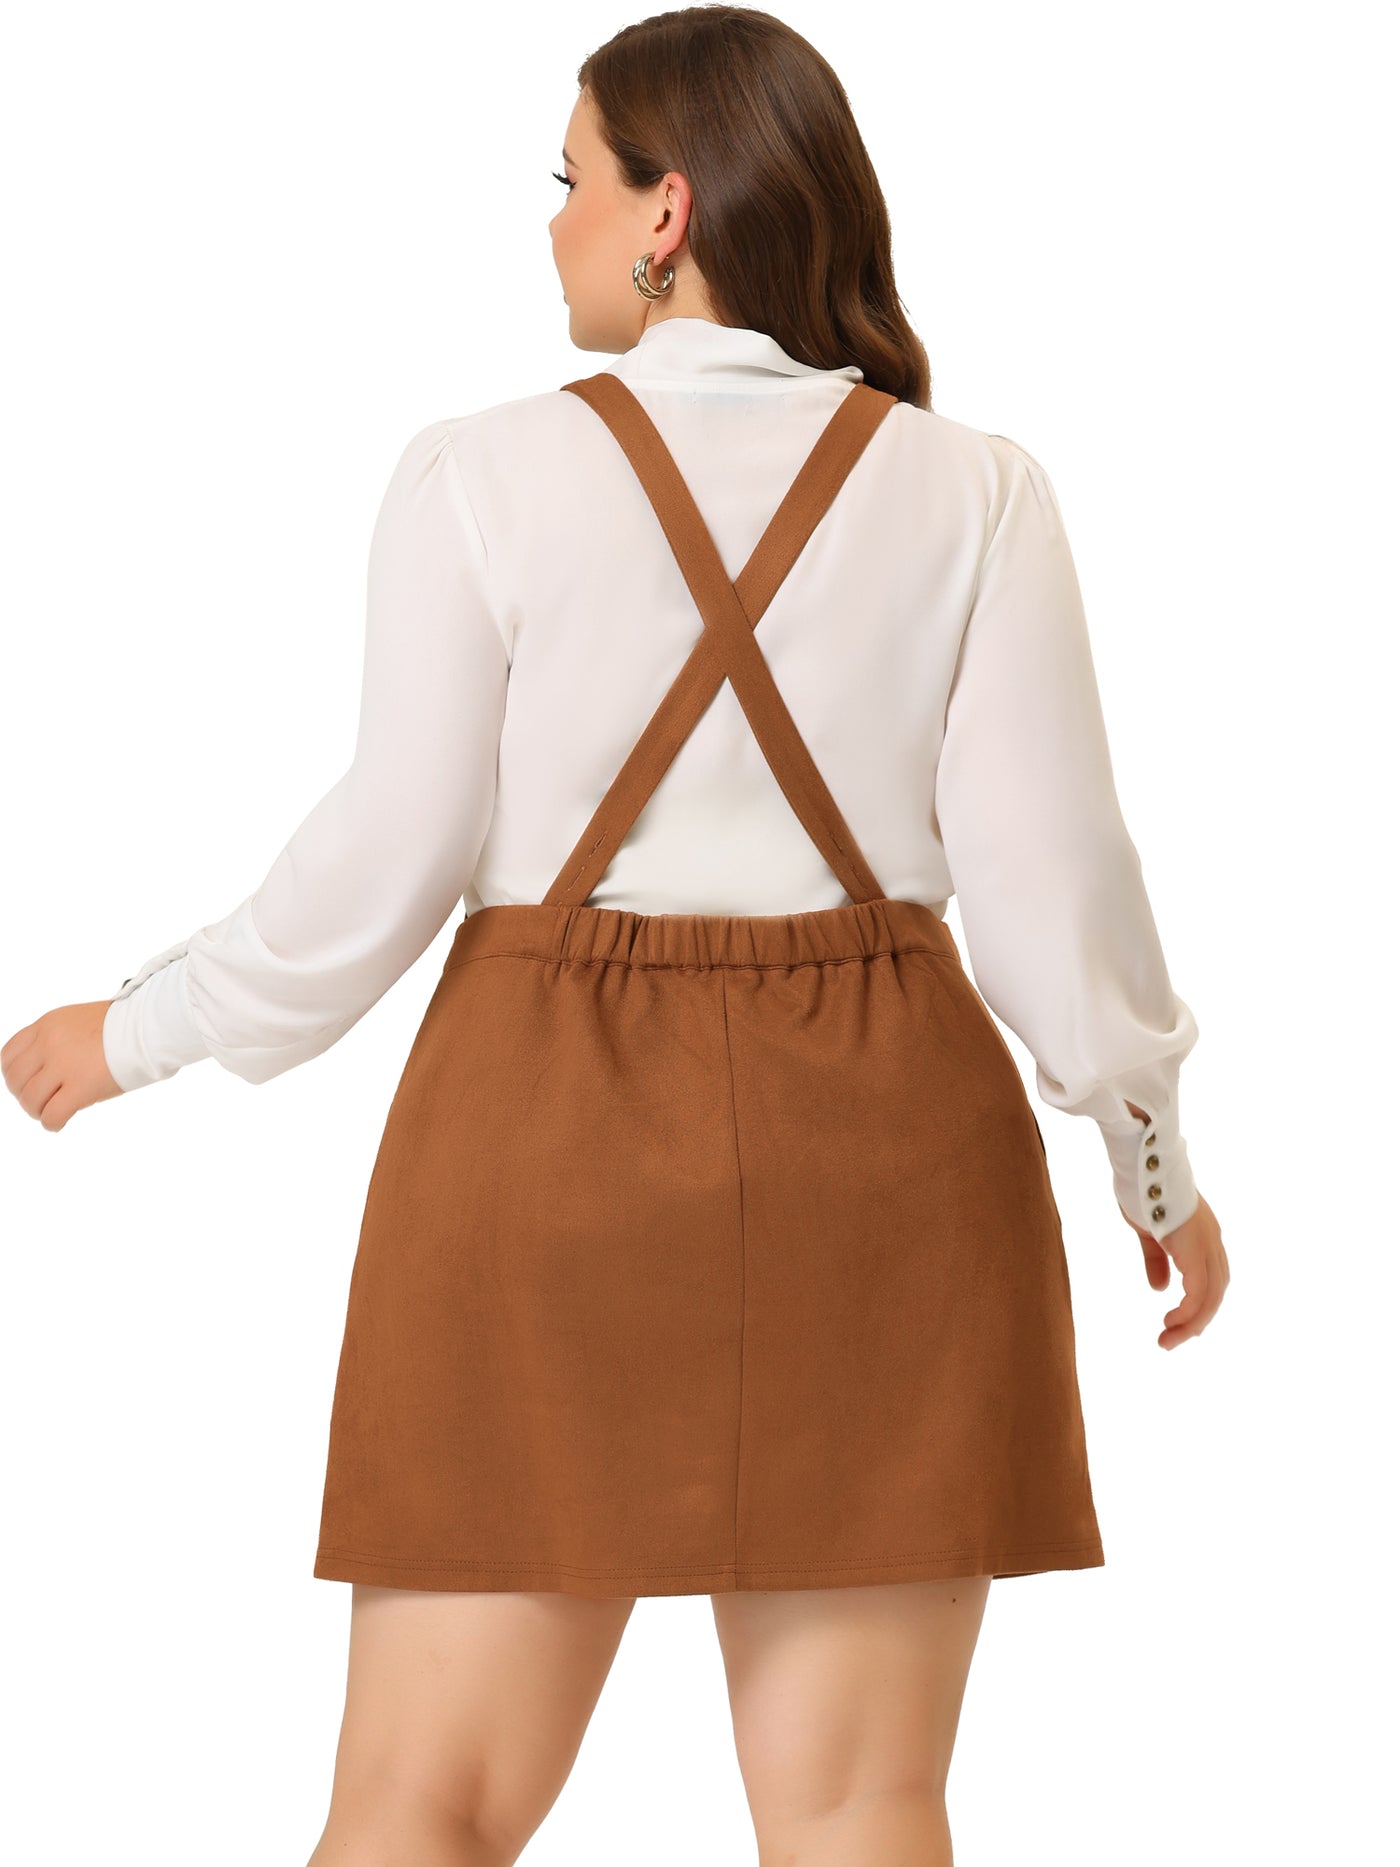 Bublédon A Line Suede Elastic Back Suspender Skirt